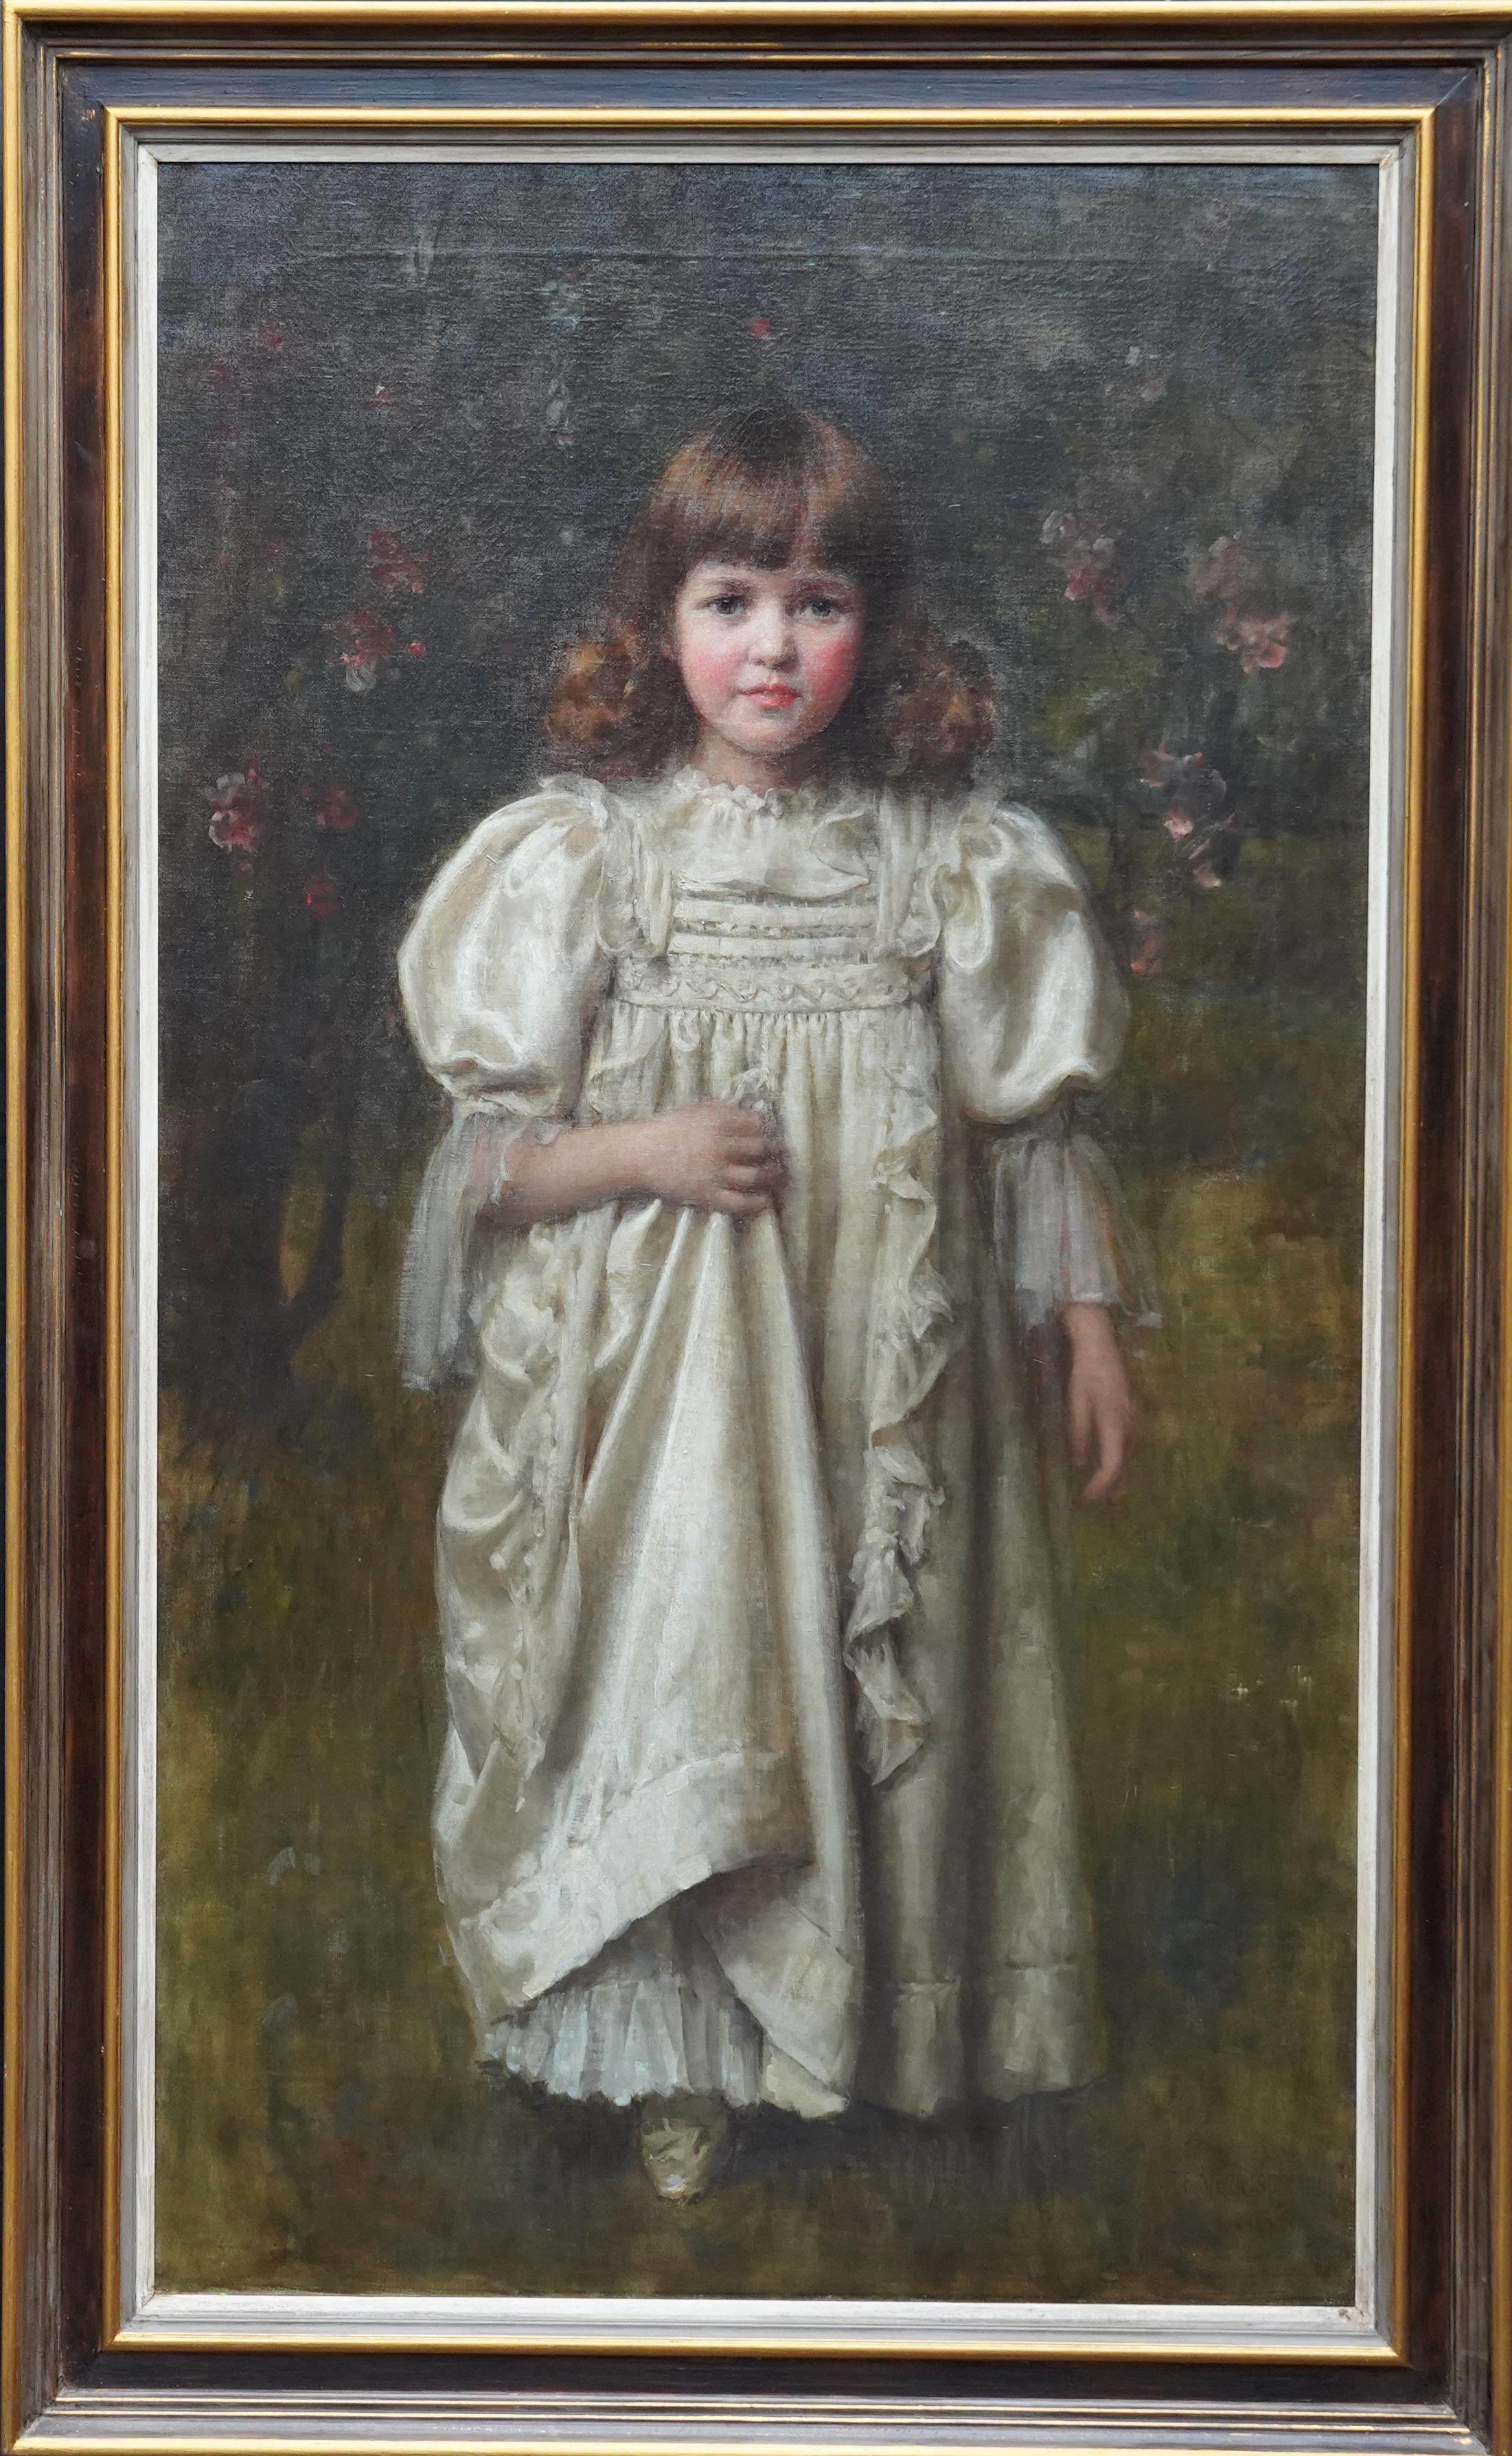 Porträt eines jungen Mädchens in einem weißen Kleid – britisches edwardianisches Ölgemälde